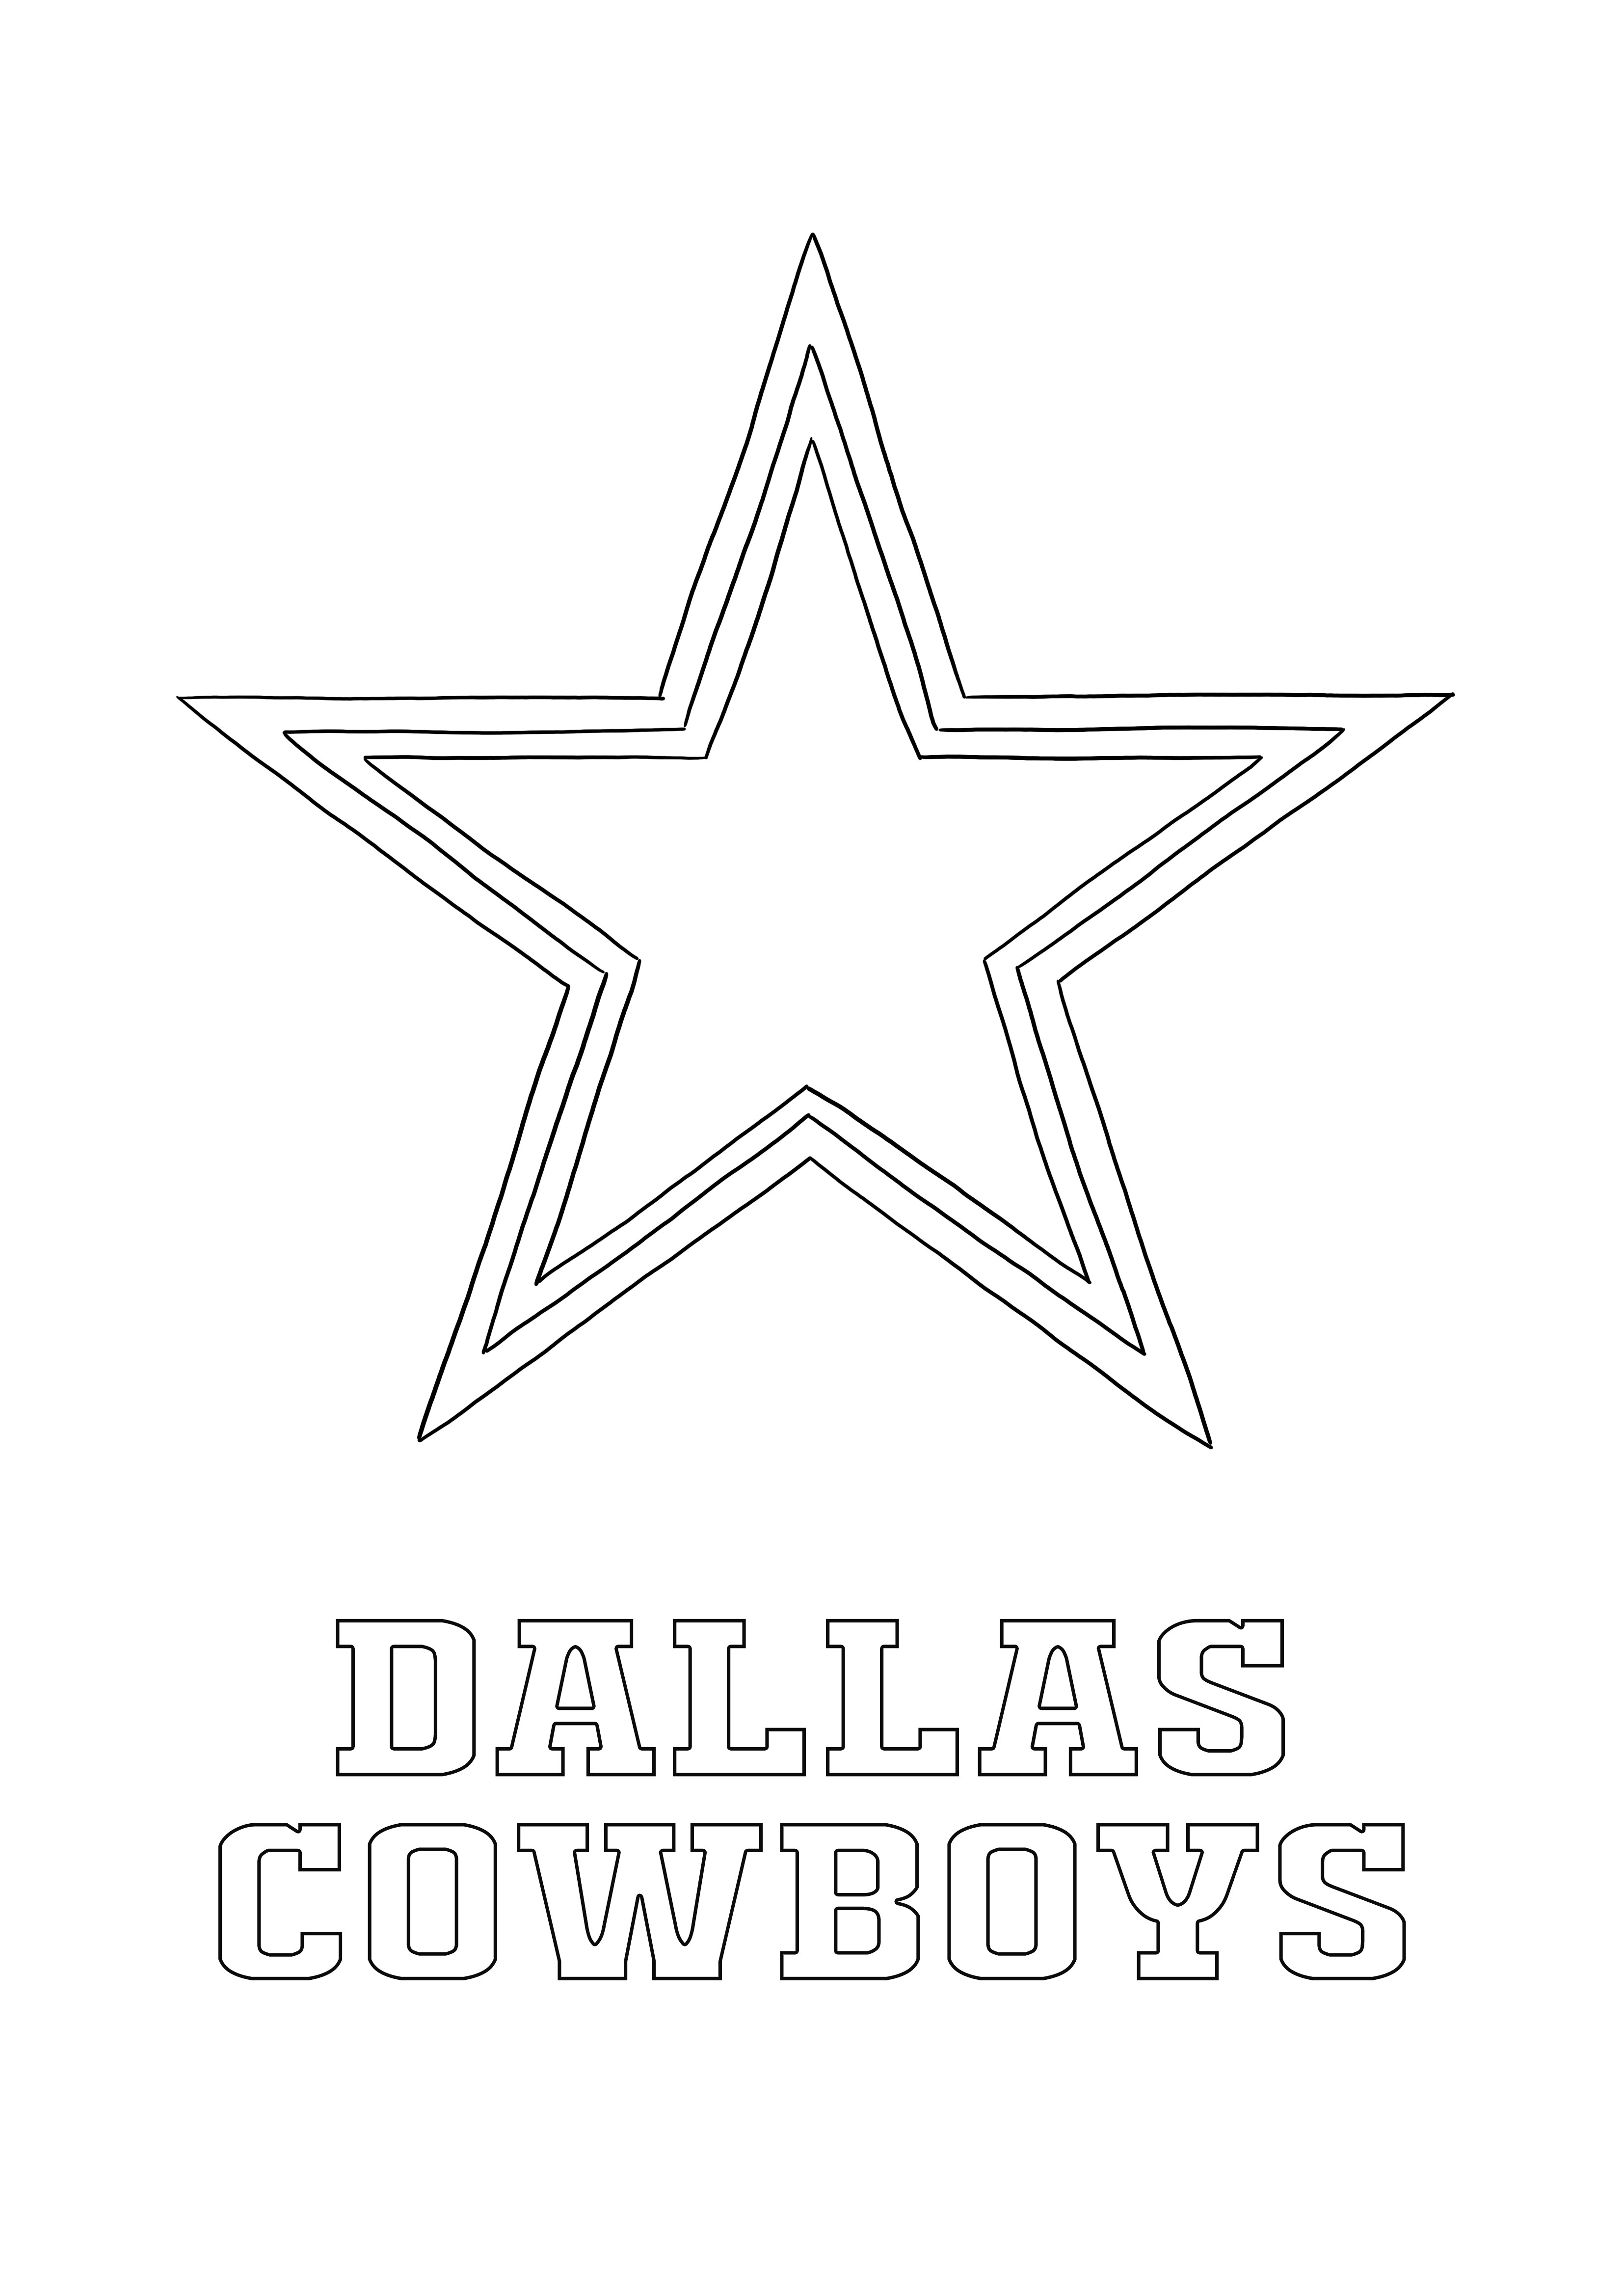 Coloração e impressão gratuitas do logotipo do Dallas Cowboys para todos os fãs de esportes